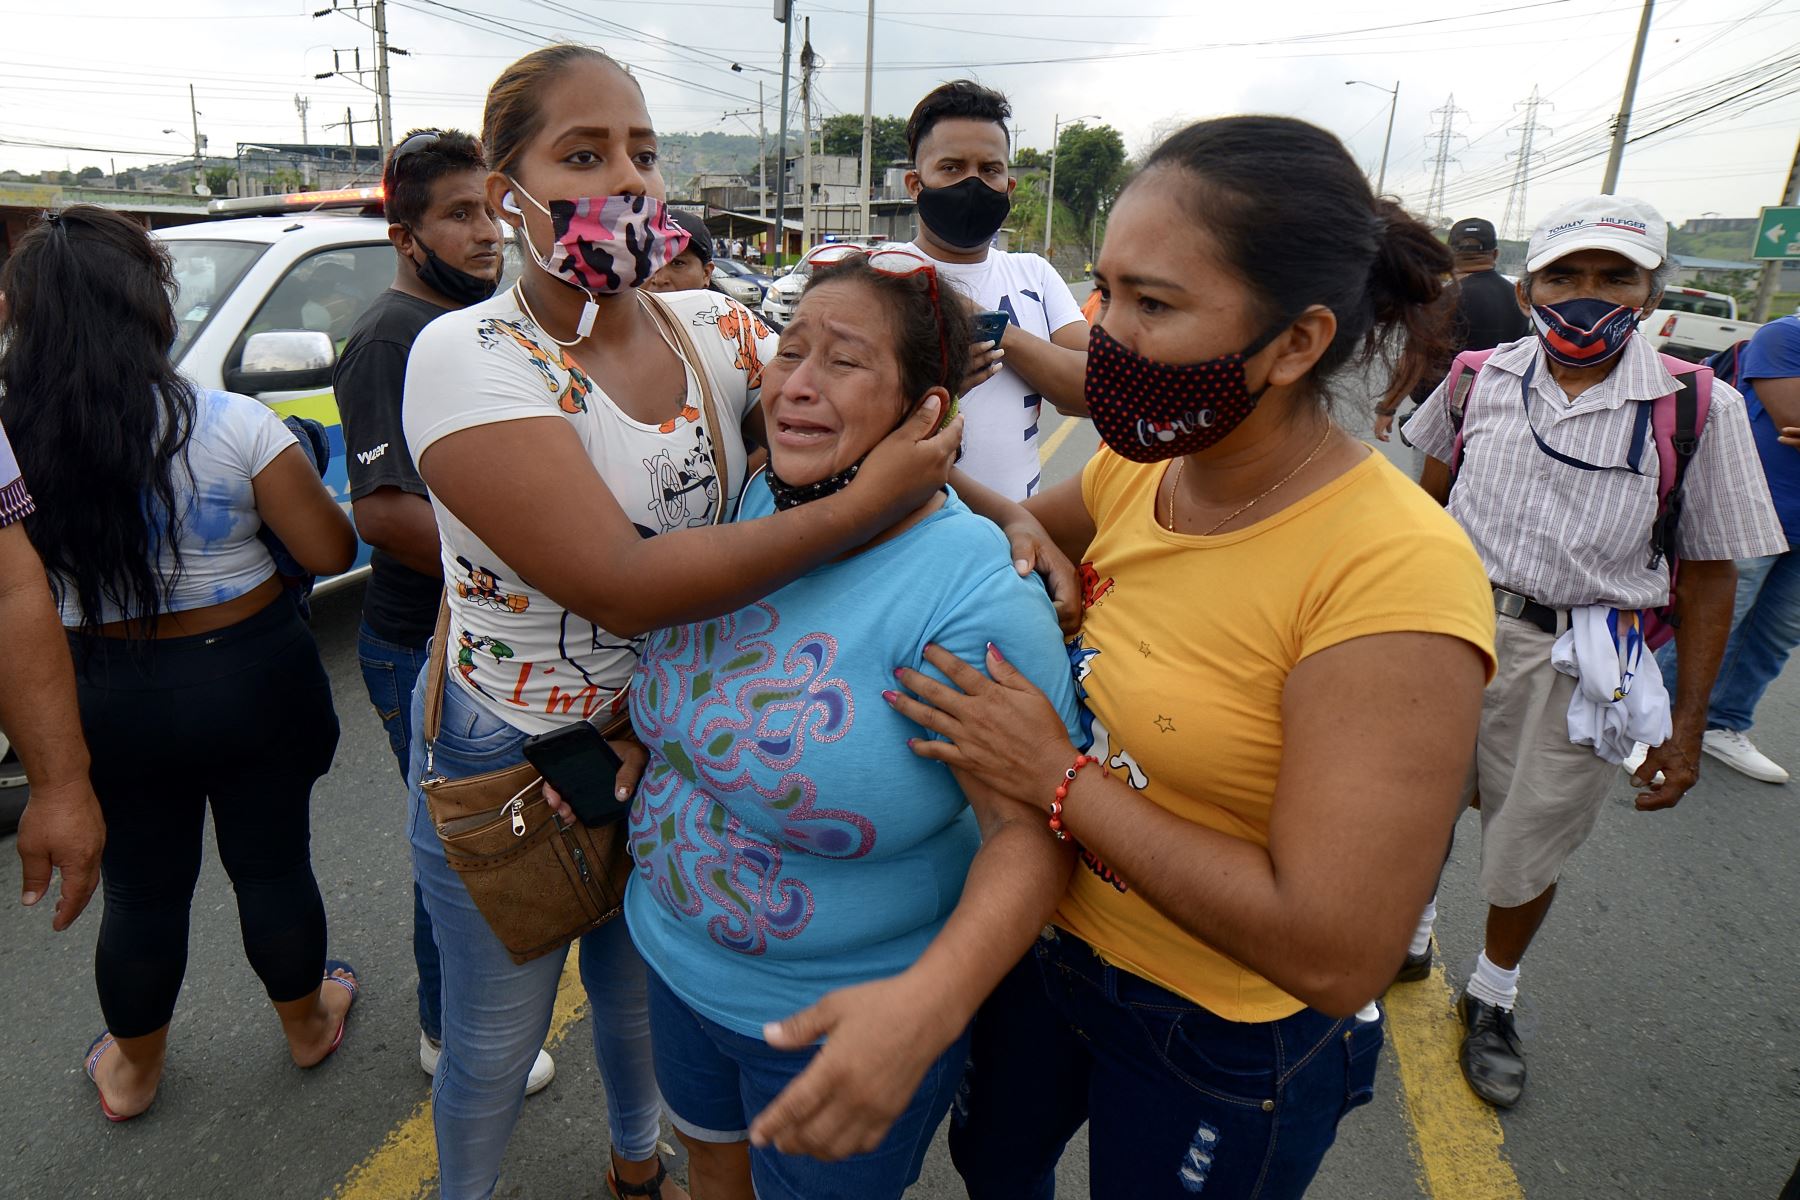 Los familiares de los presos en el Centro de Privación de Libertad Zona 8 son vistos mientras esperan noticias, en Guayaquil, Ecuador. Al menos 50 presos murieron en disturbios en tres cárceles en Ecuador.
Foto: AFP